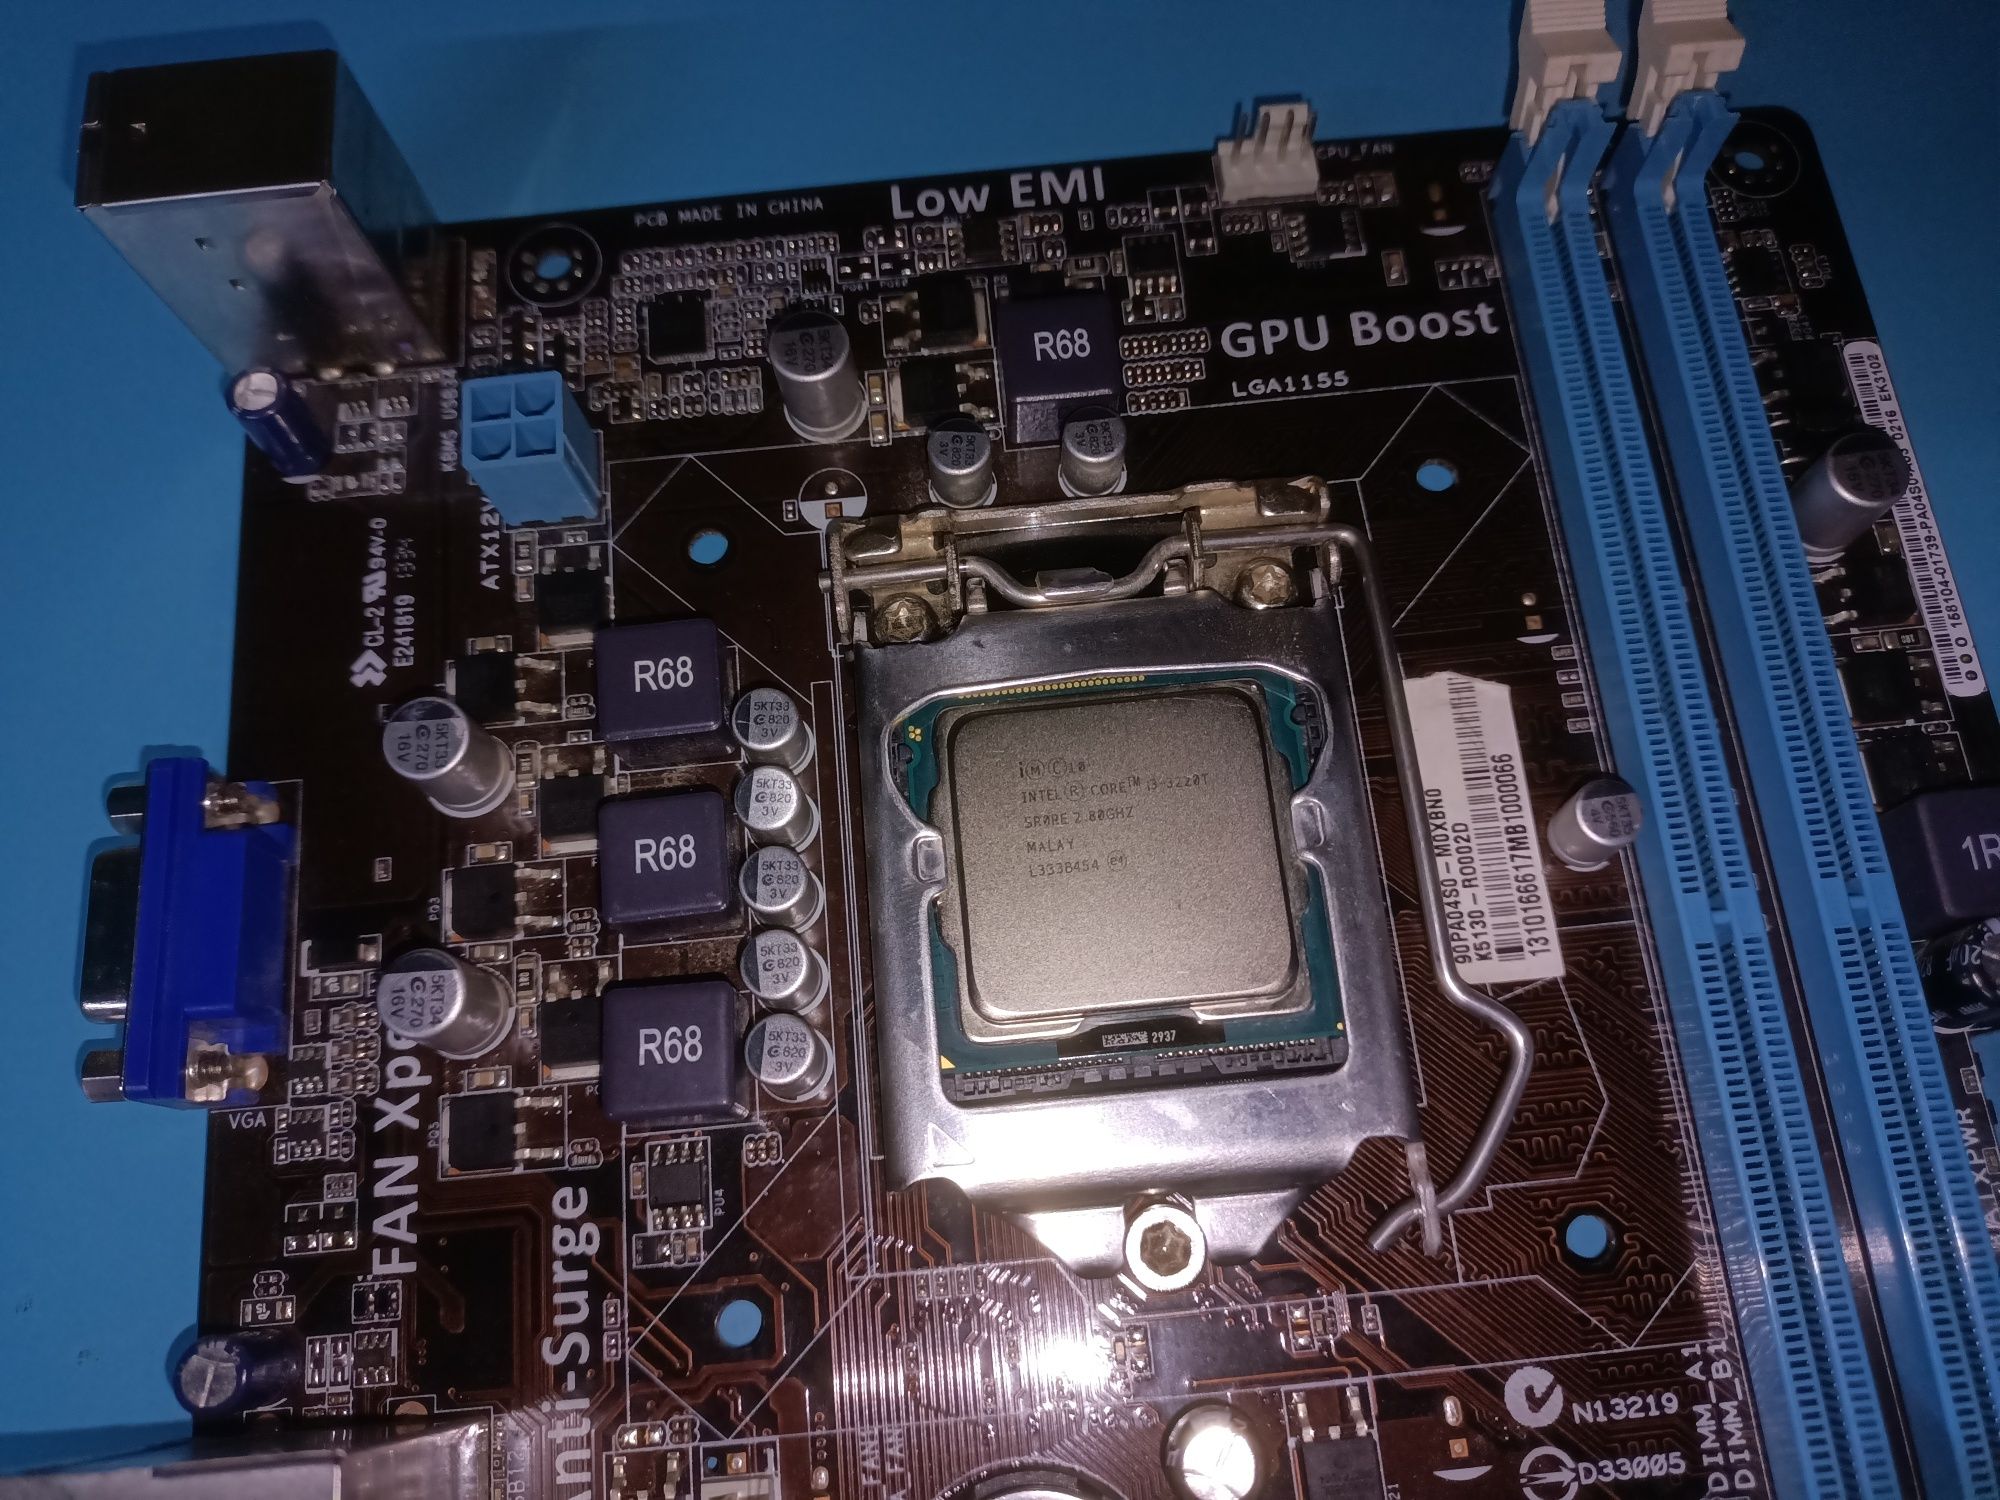 Placa de baza Asus P8H61-M + Intel i3-3220T 2,80Ghz